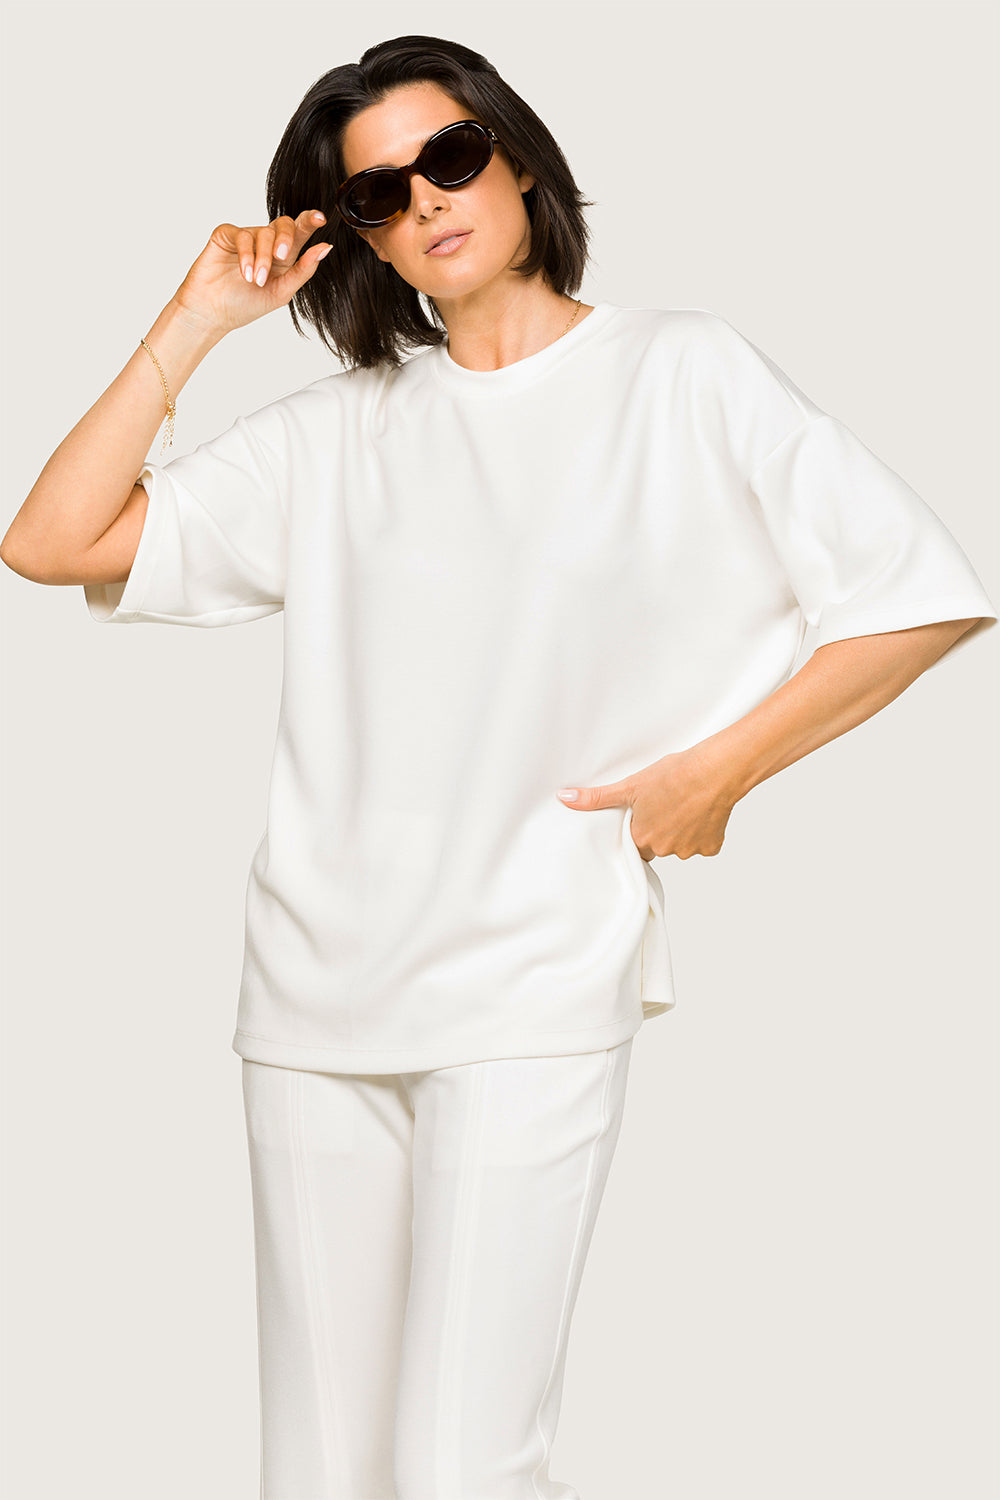 Alala women's soft oversized t-shirt in white